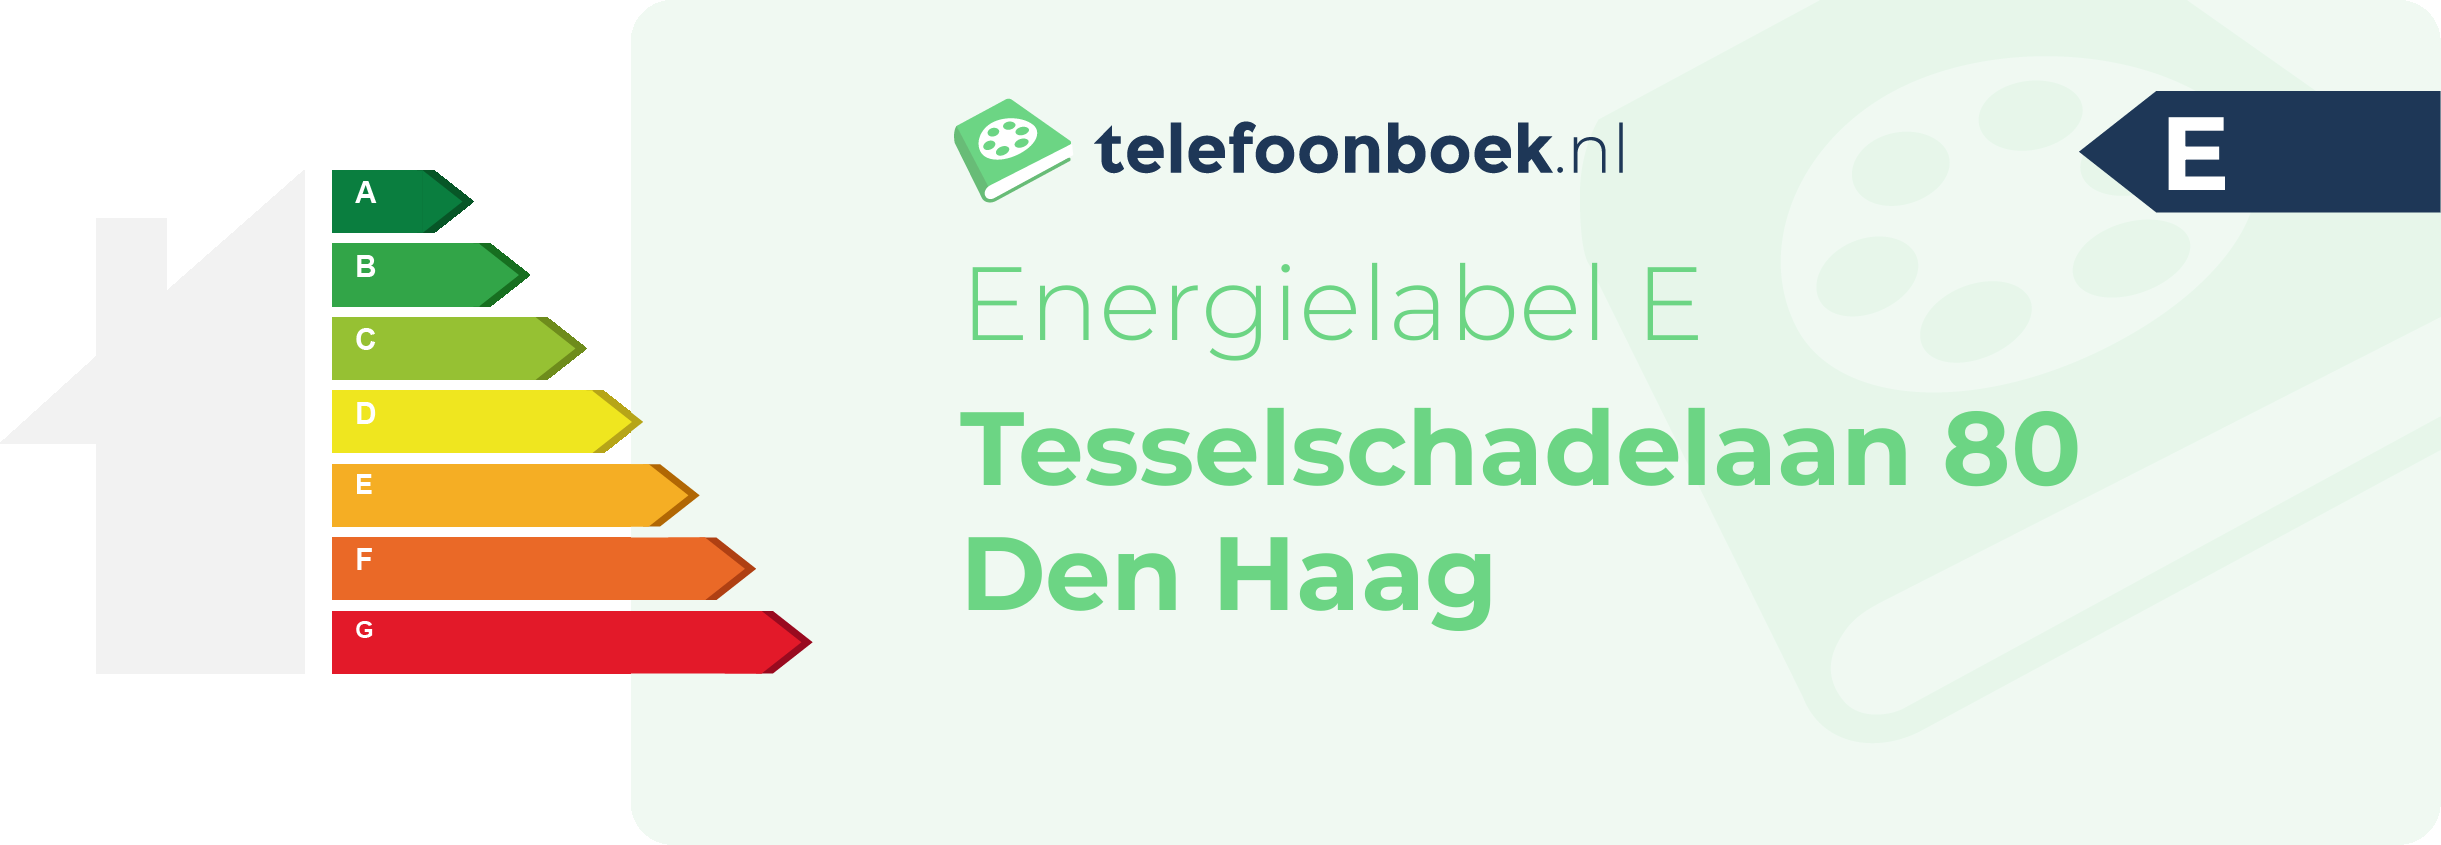 Energielabel Tesselschadelaan 80 Den Haag